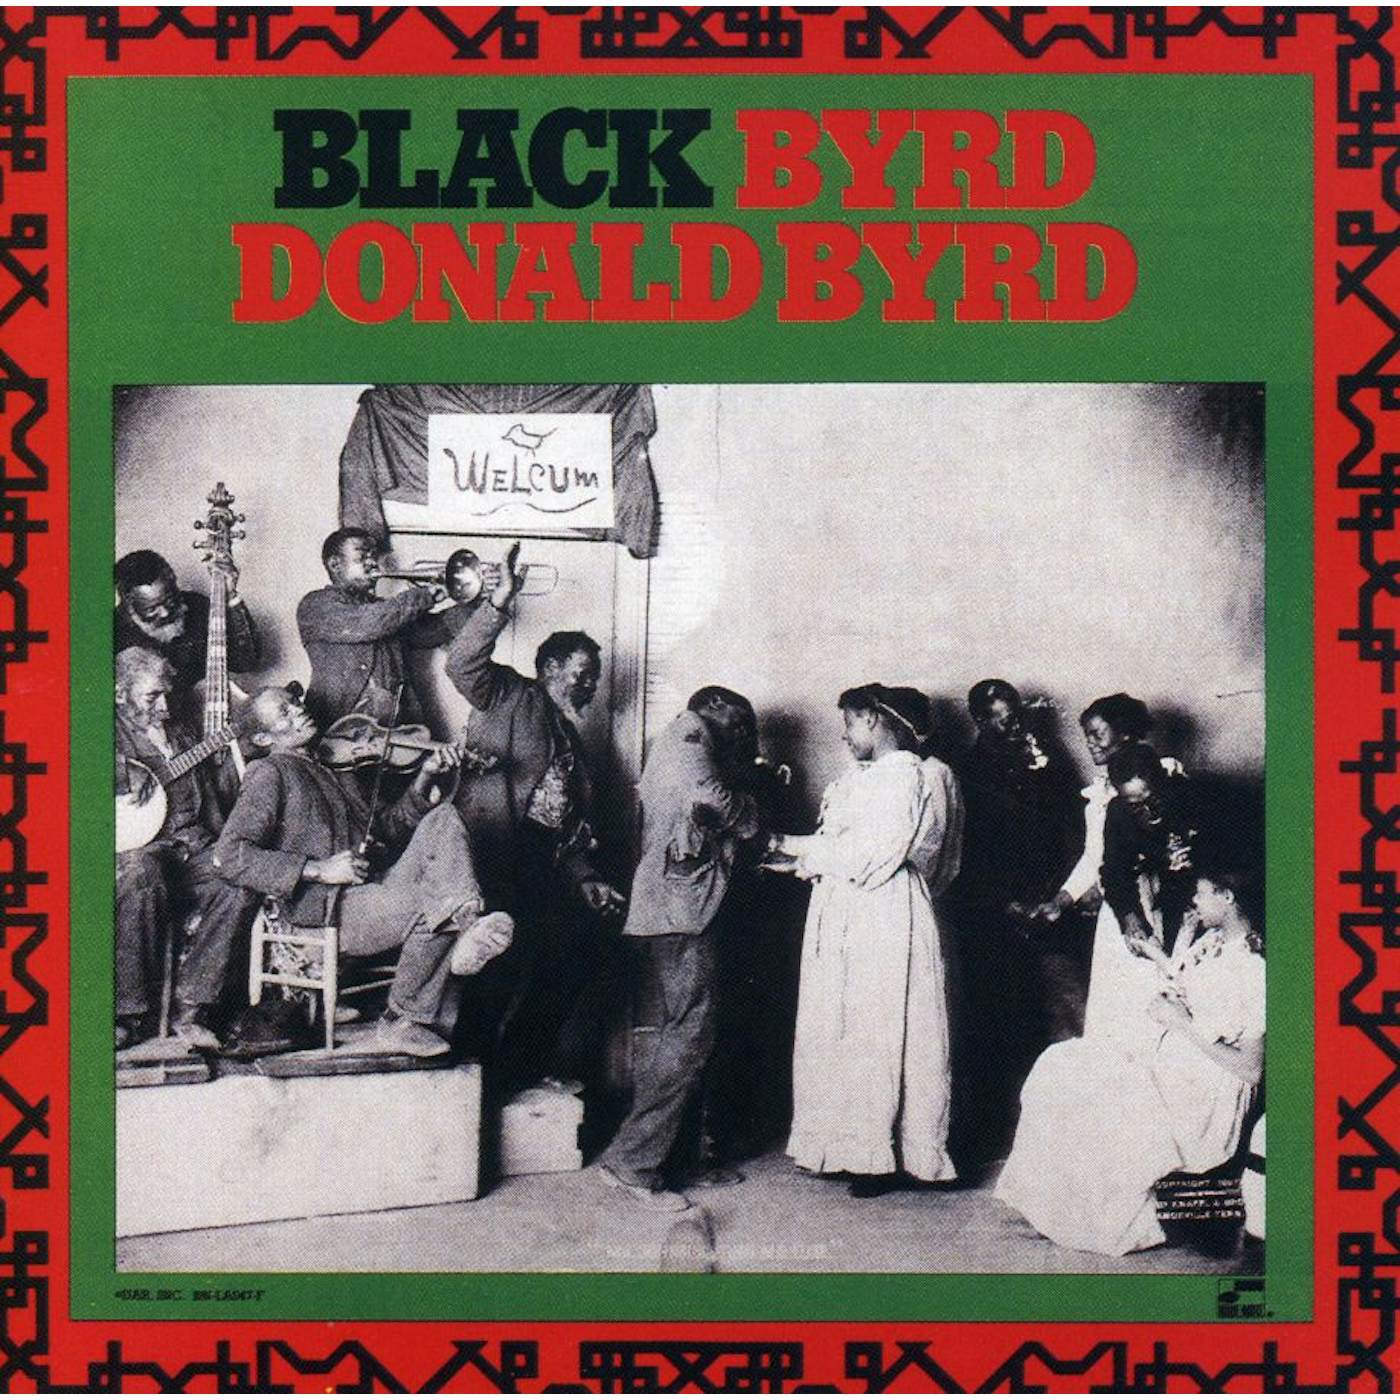 Donald Byrd BLACKBYRD CD